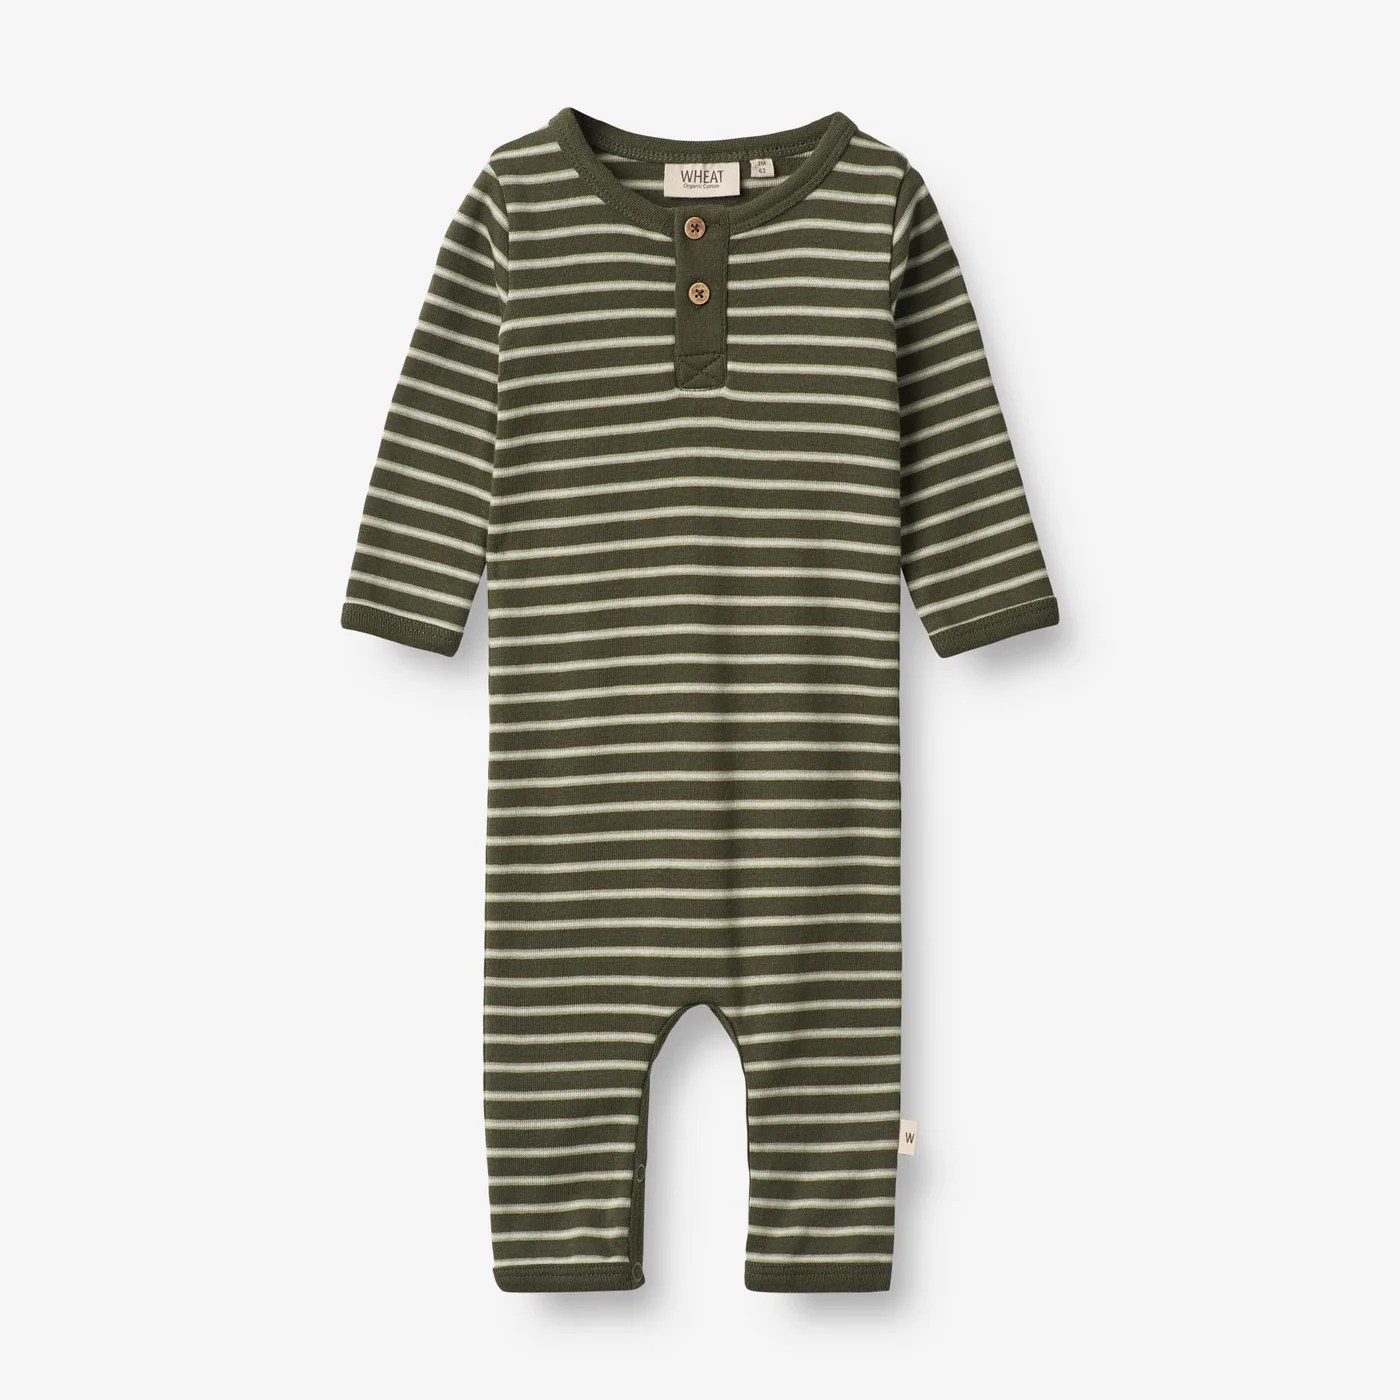 Produktbild: wheat - Strampler Finn - dark green stripe von wheat im Onlineshop von dasMikruli - Dein Shop für Baby Erstausstattung